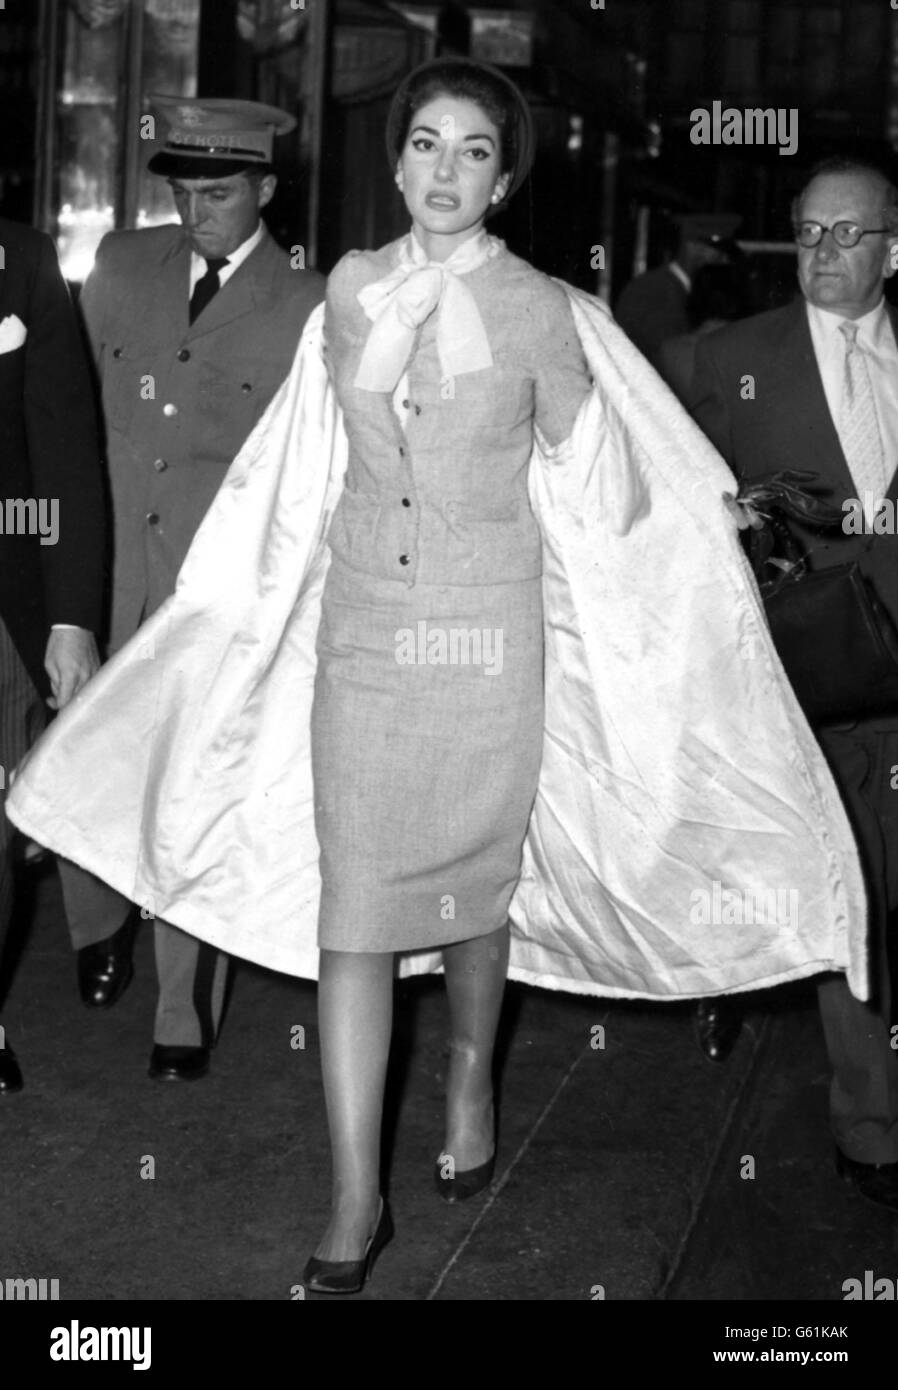 La chanteuse d'opéra Maria Callas, qui venait juste de quitter l'aéroport de Londres, se moque du manteau de laine de son agneau blanc alors qu'elle se trouve à l'hôtel Savoy de Londres. Banque D'Images